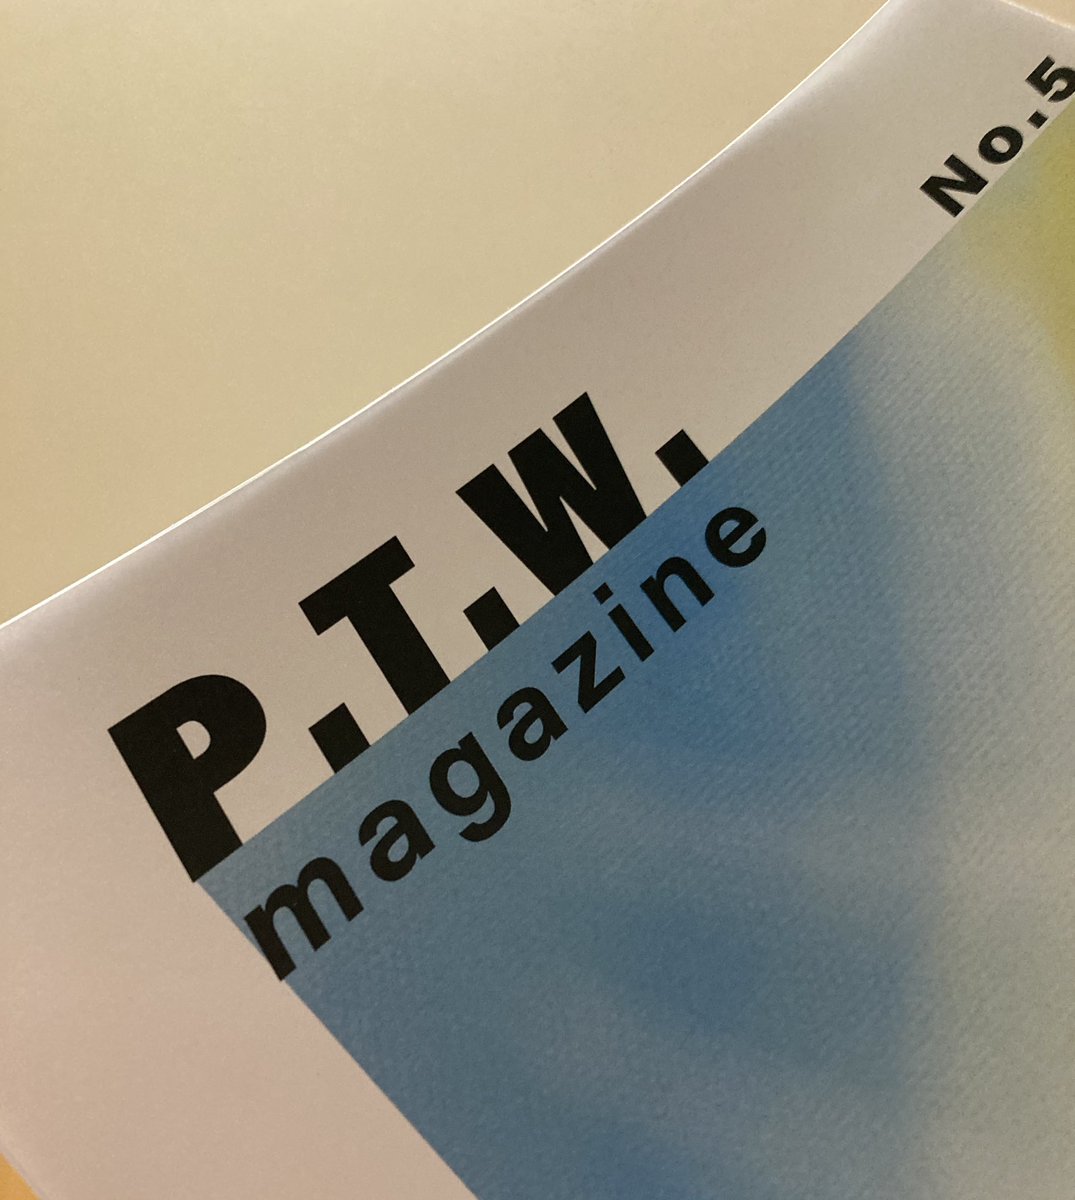 P.T.W magazine No.5
届きました！
延ちゃん4ｺﾏがめちゃ可愛い···
とあるコーナーについてコメントしたいけどココもどうかだしP.T.Wも···🕊でも飛ばすか笑
 #GOODBYEAPRIL